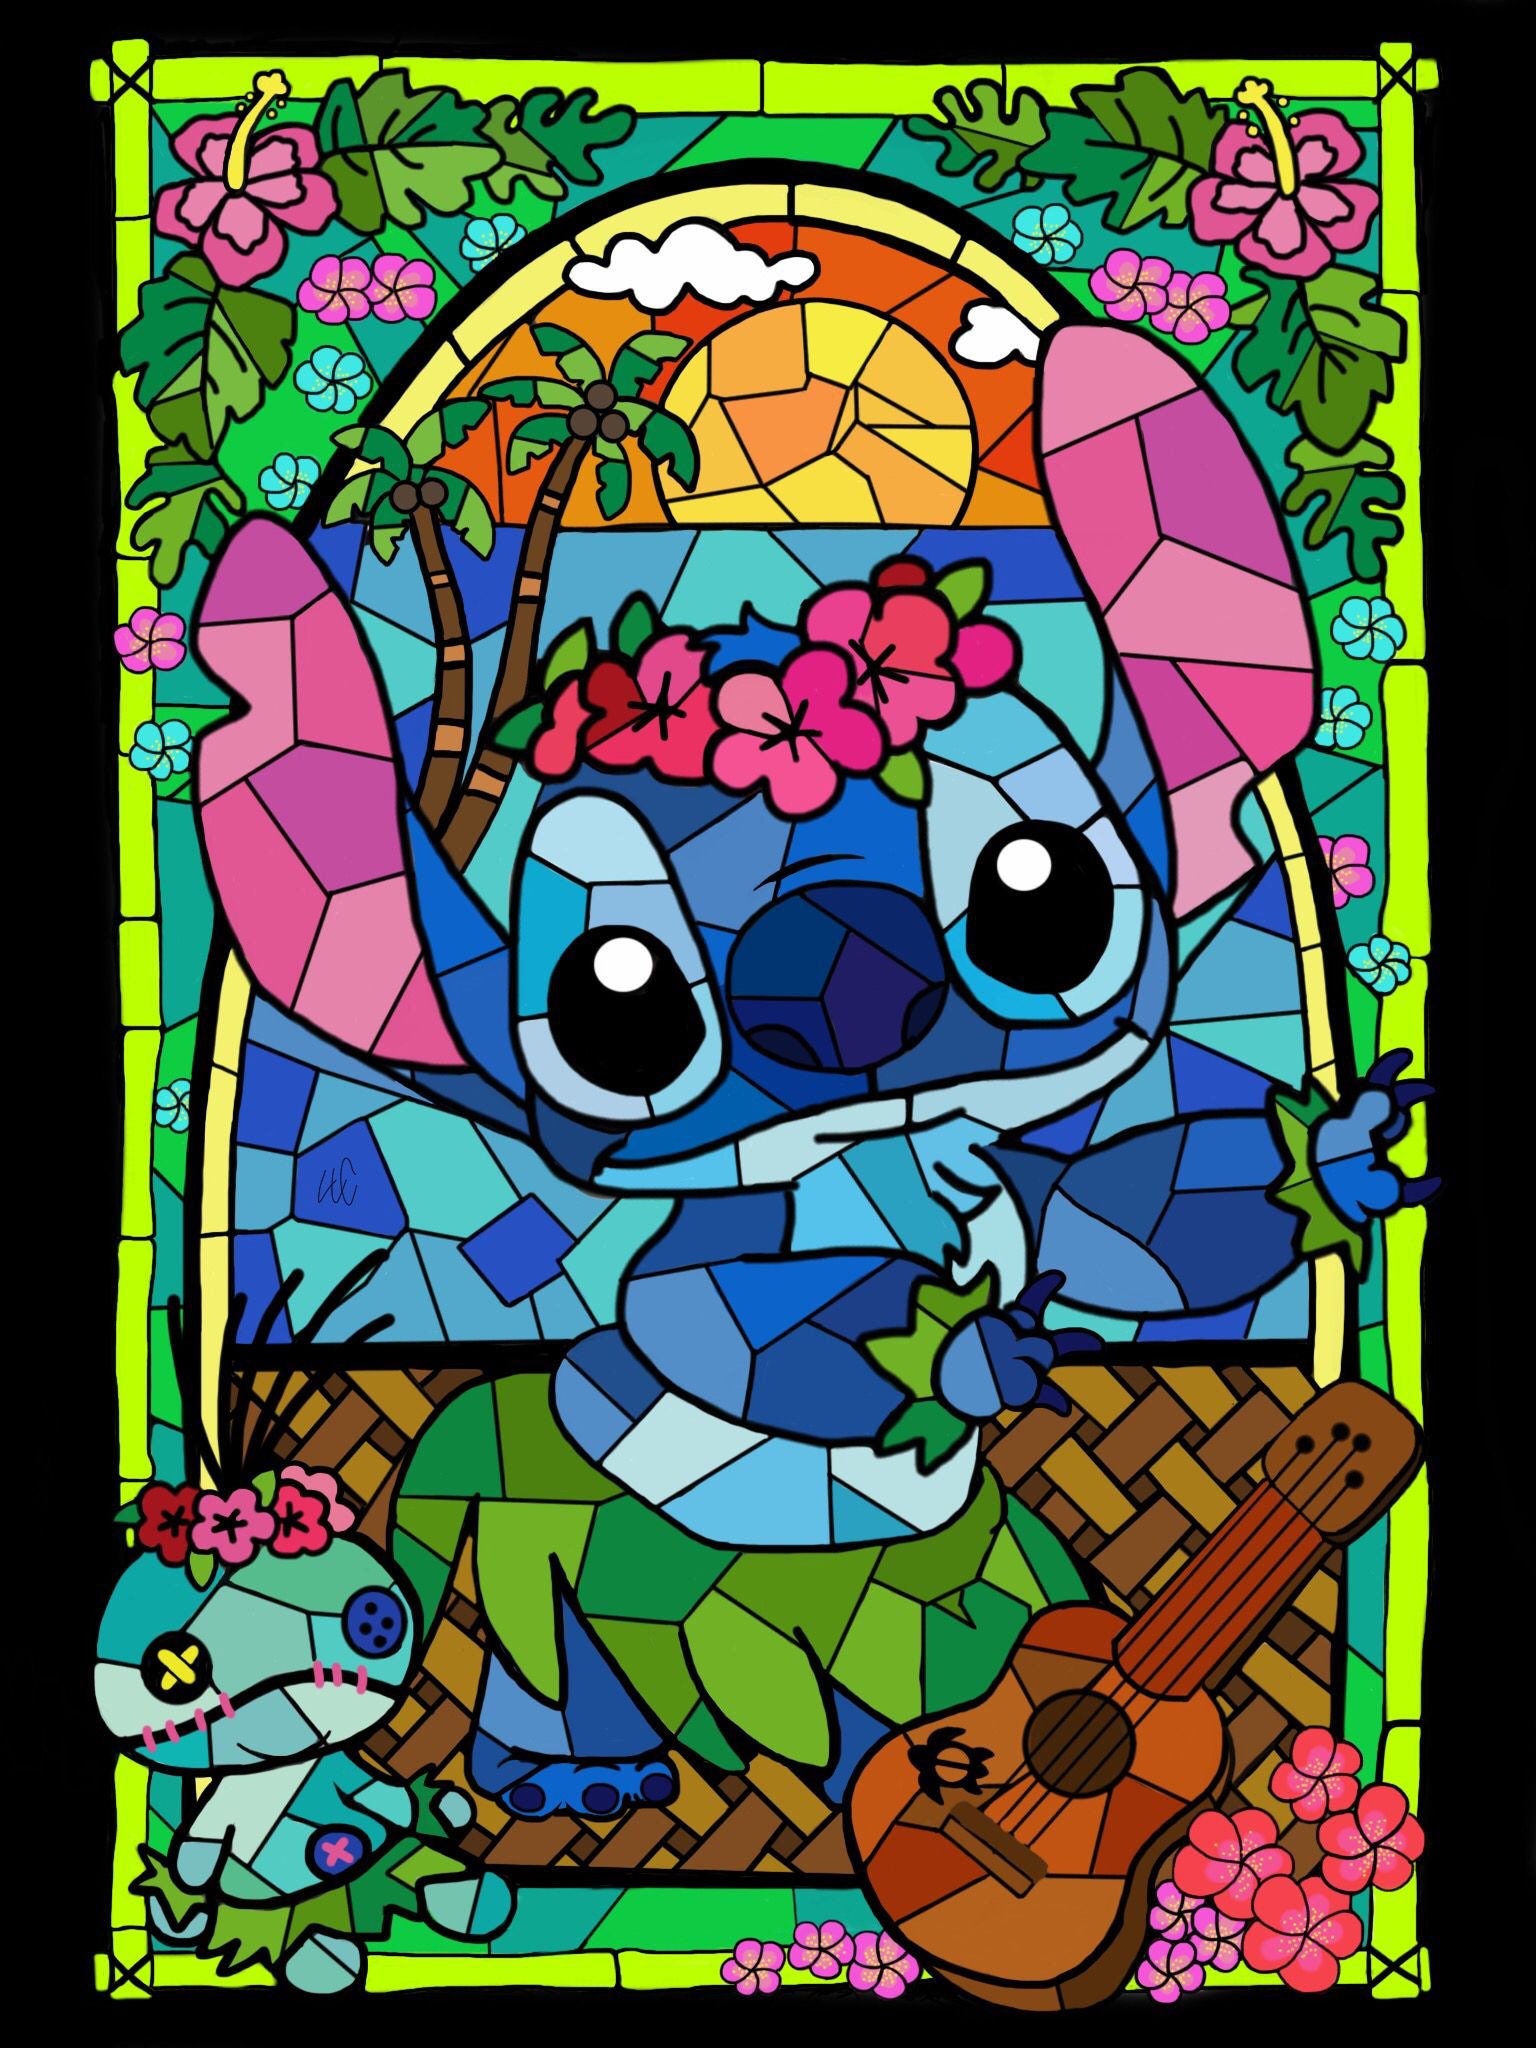 Disney Stitch - Stitch À Peindre